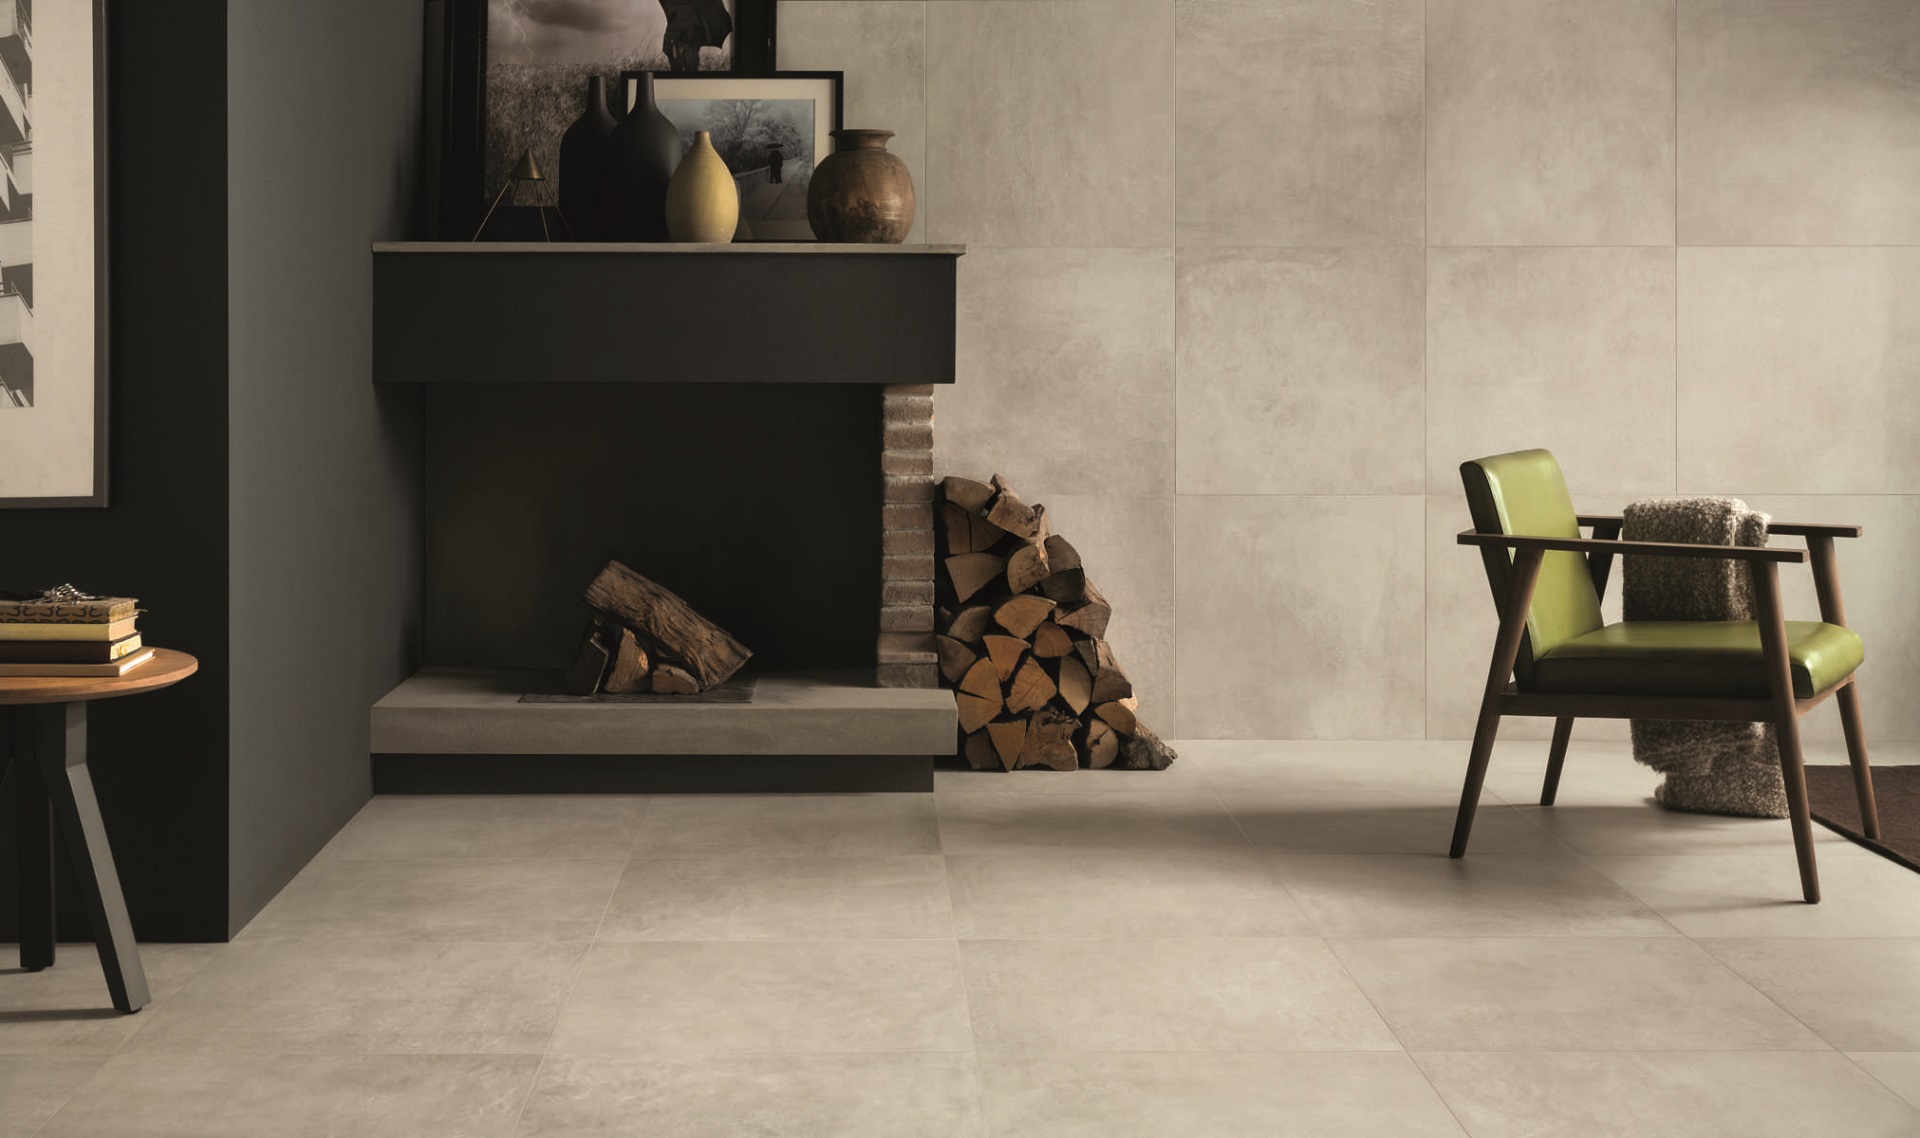 Kiểu lát gạch đơn giản cho sàn nhà đẹp (mẫu gạch wide Vapour từ Ceramiche Caesar)